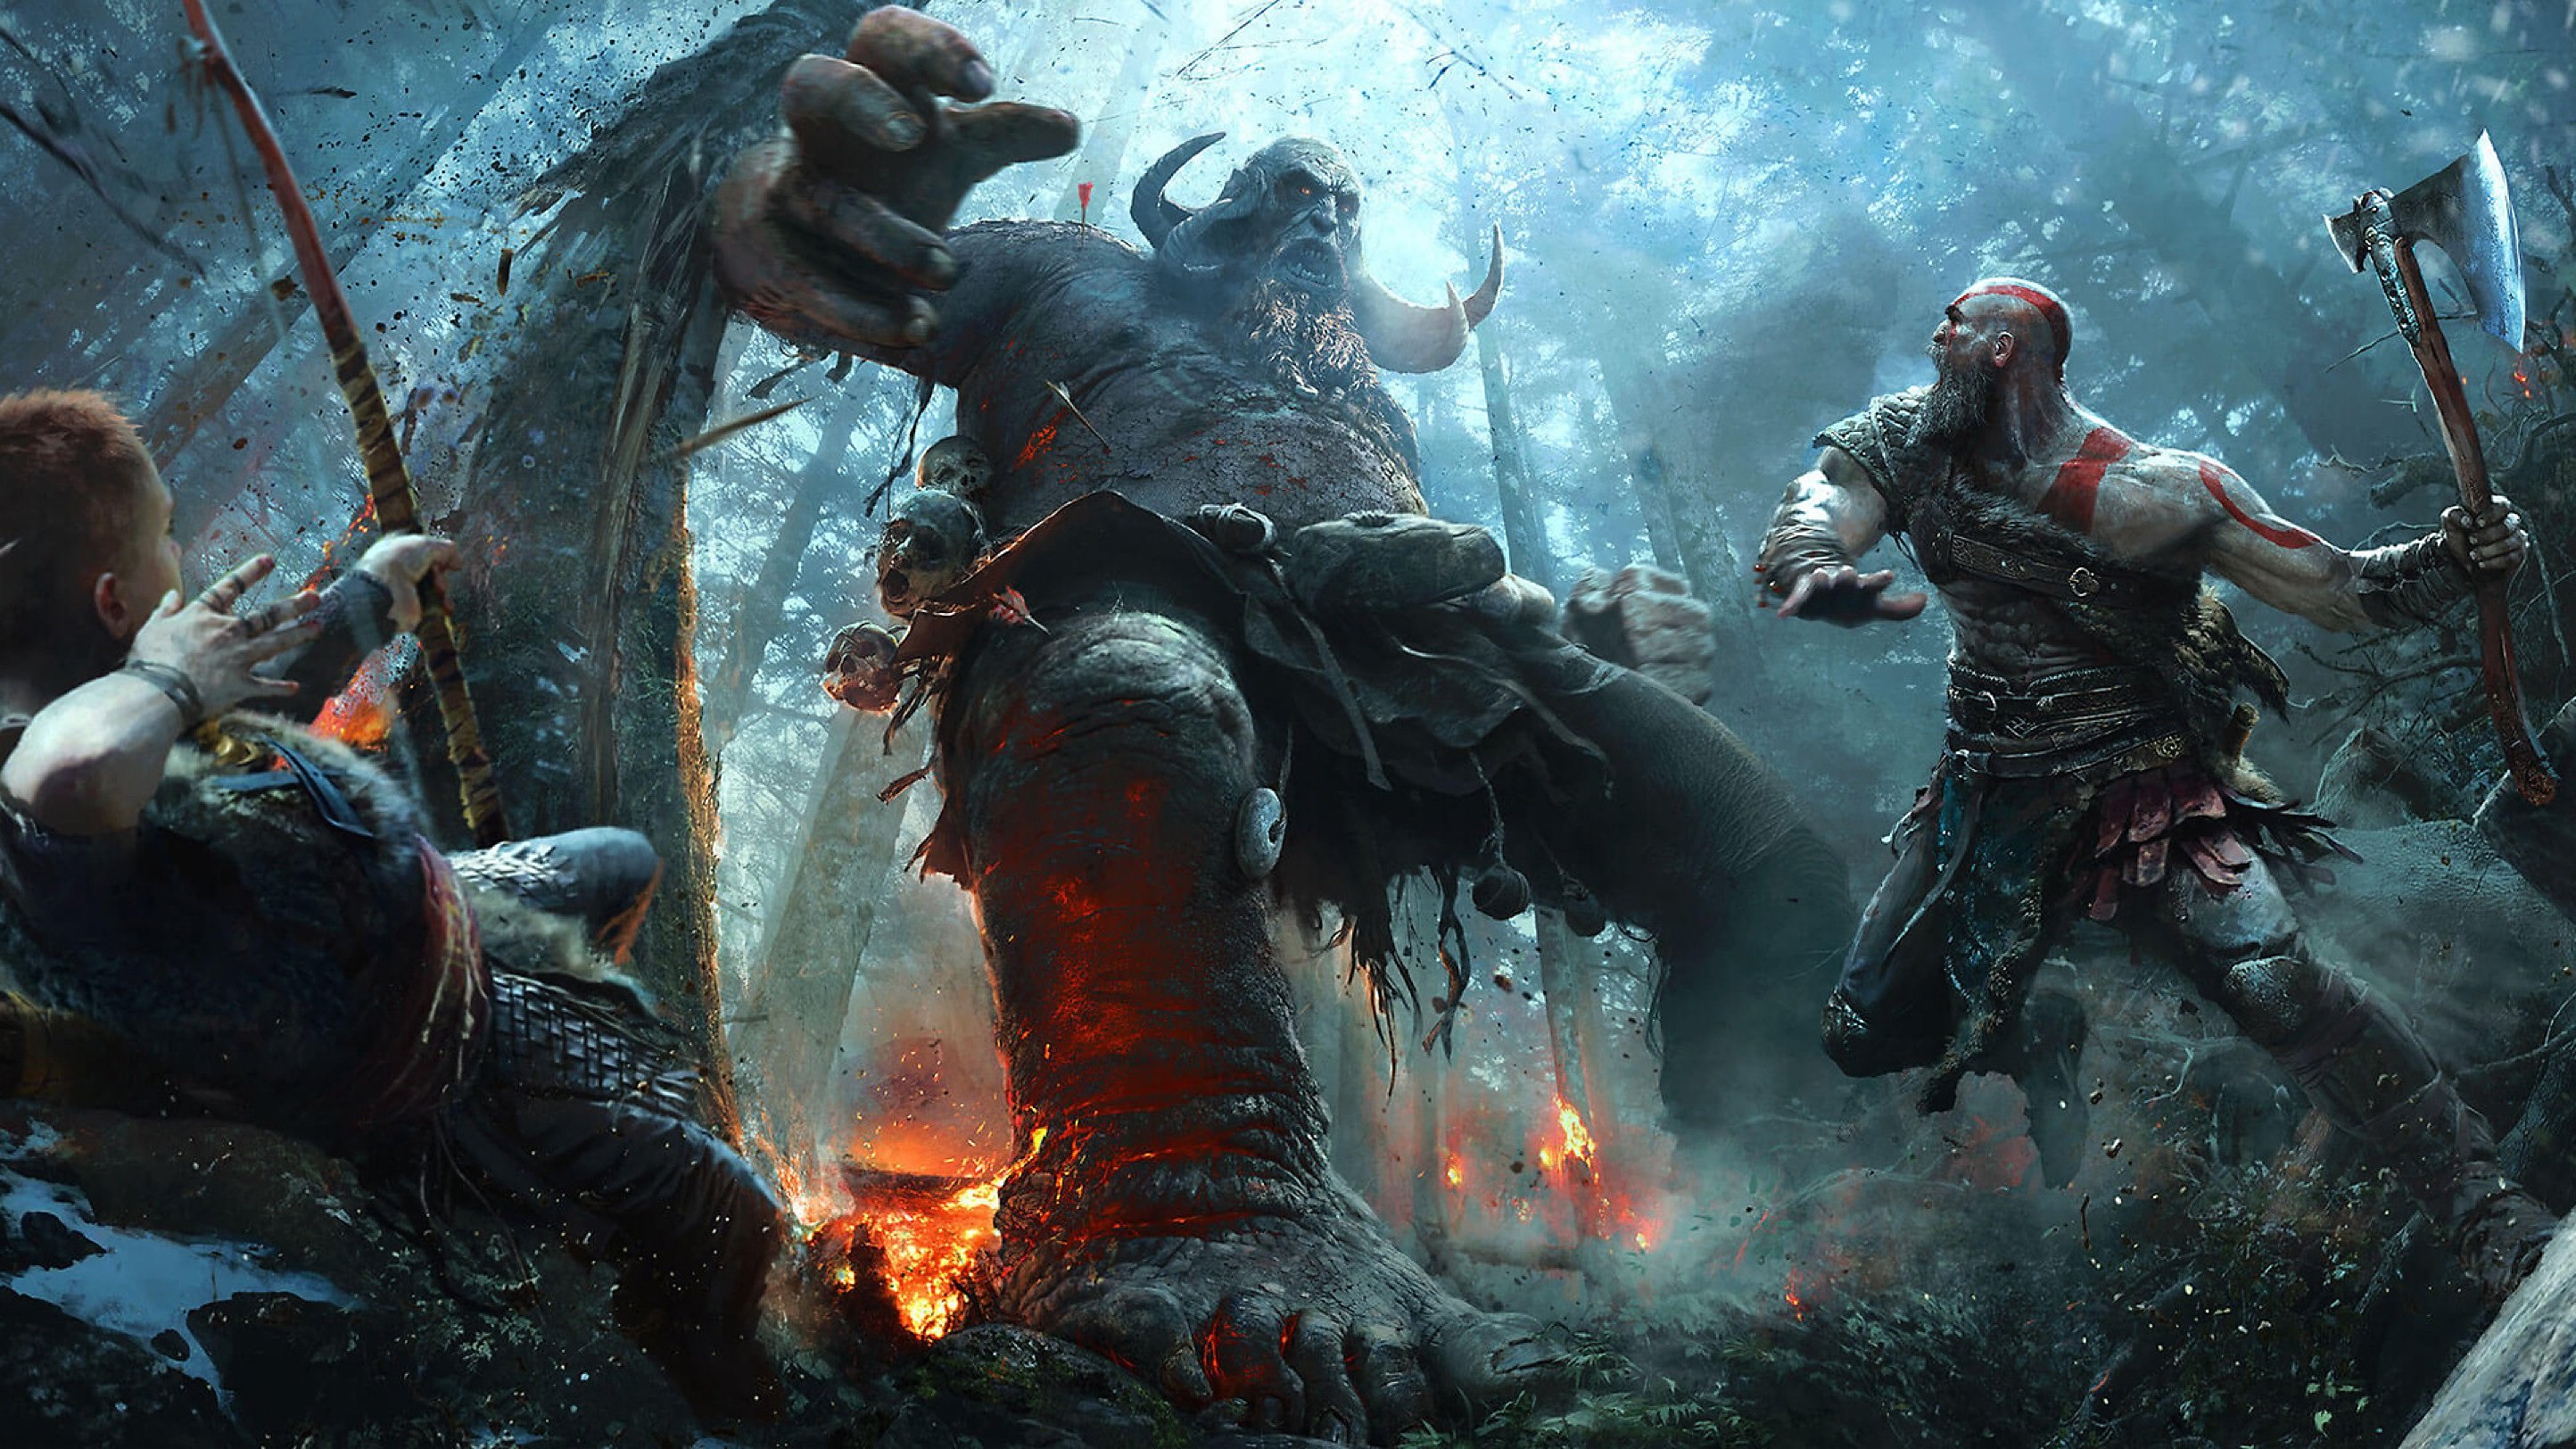 2021 Preview: God of War: Ragnarök teases an epic Norse battle